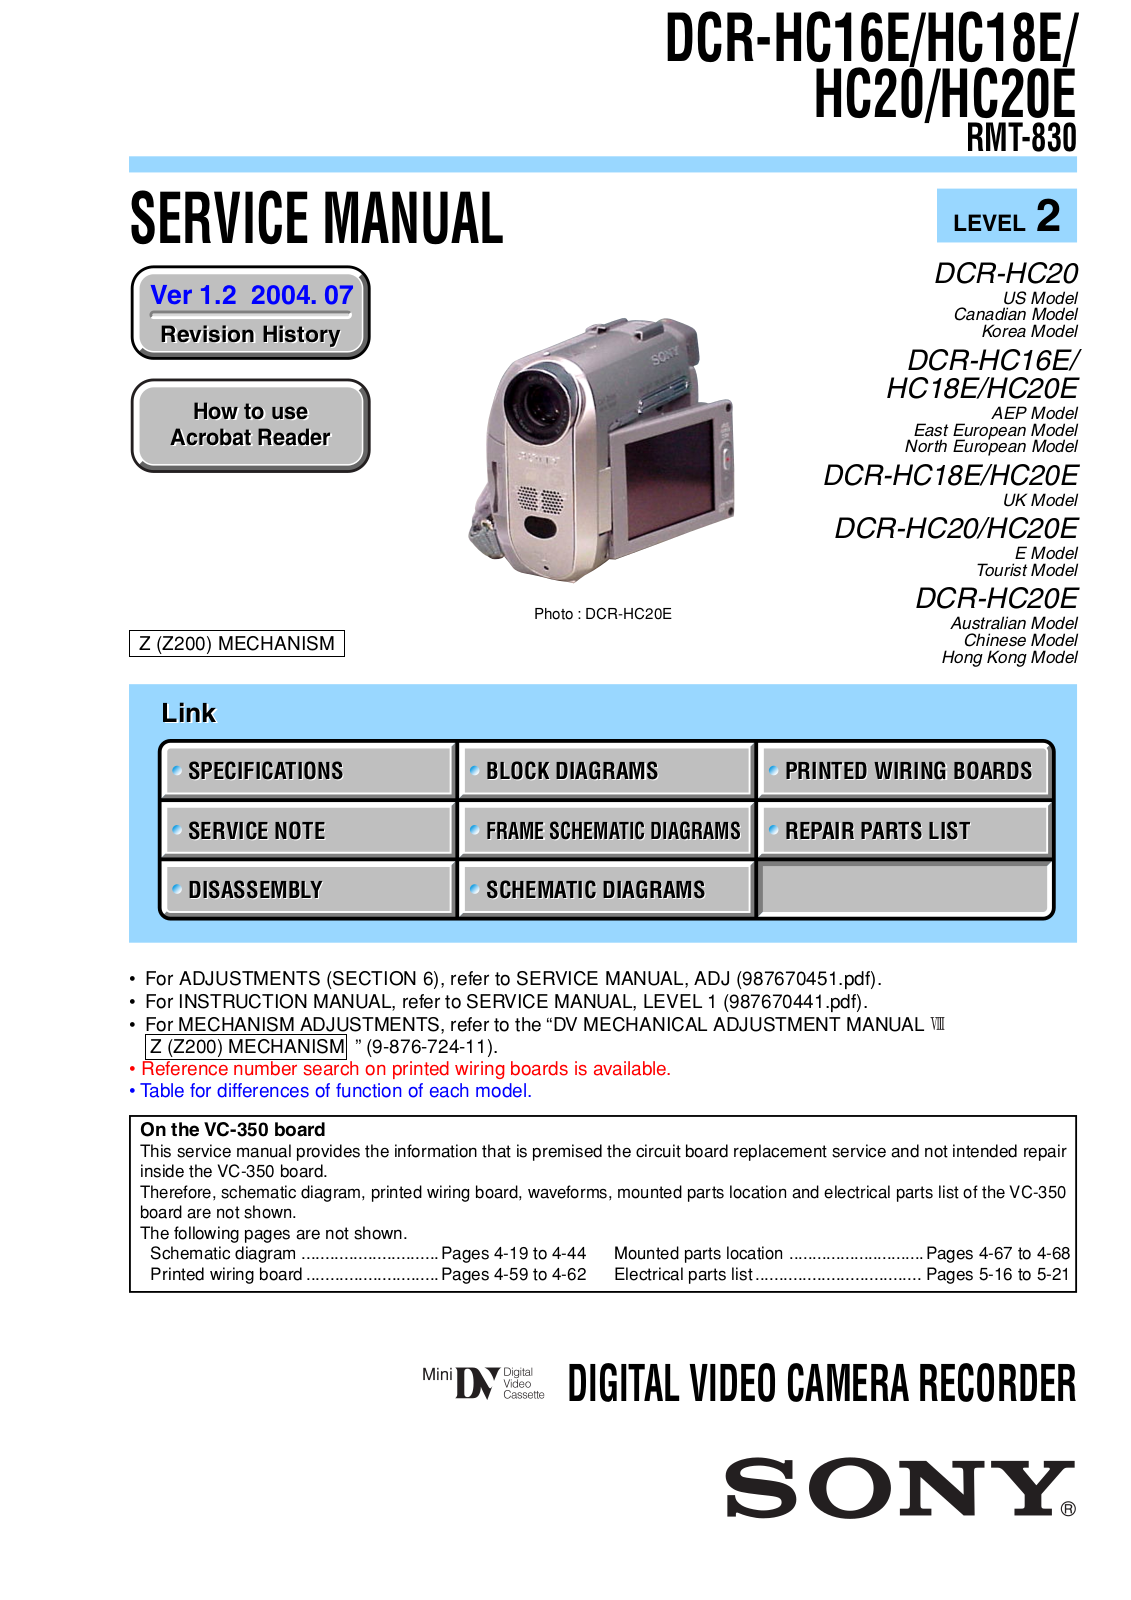 Sony DCR-HC20E, DCR-HC18E, DCR-HC20, DCR-HC16E User Manual